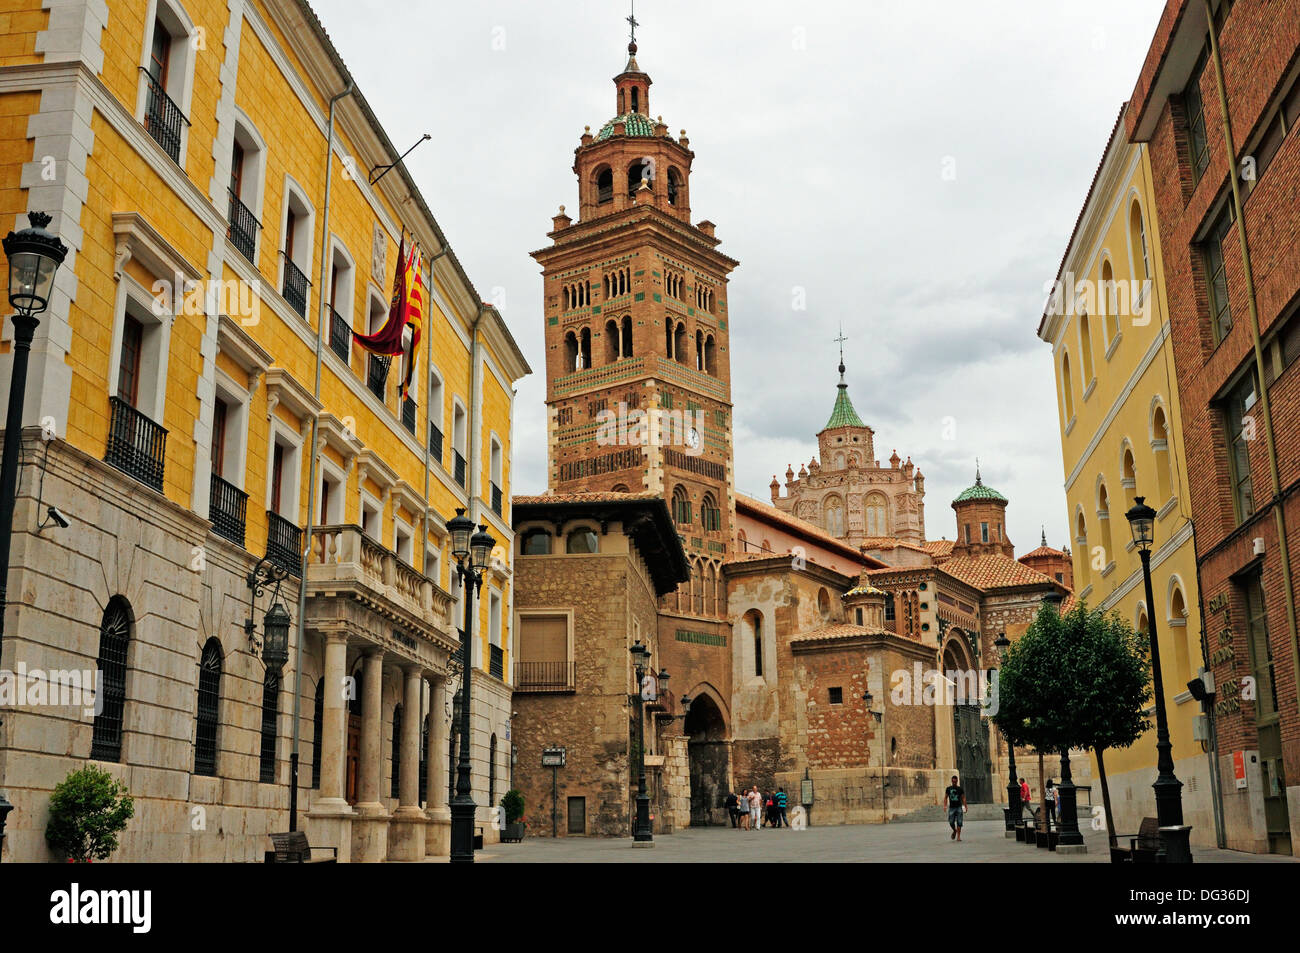 La torre de la catedral y de la plaza con el ayuntamiento de la ciudad sobre el lado izquierdo, Teruel, capital del arte mudéjar en España. Foto de stock